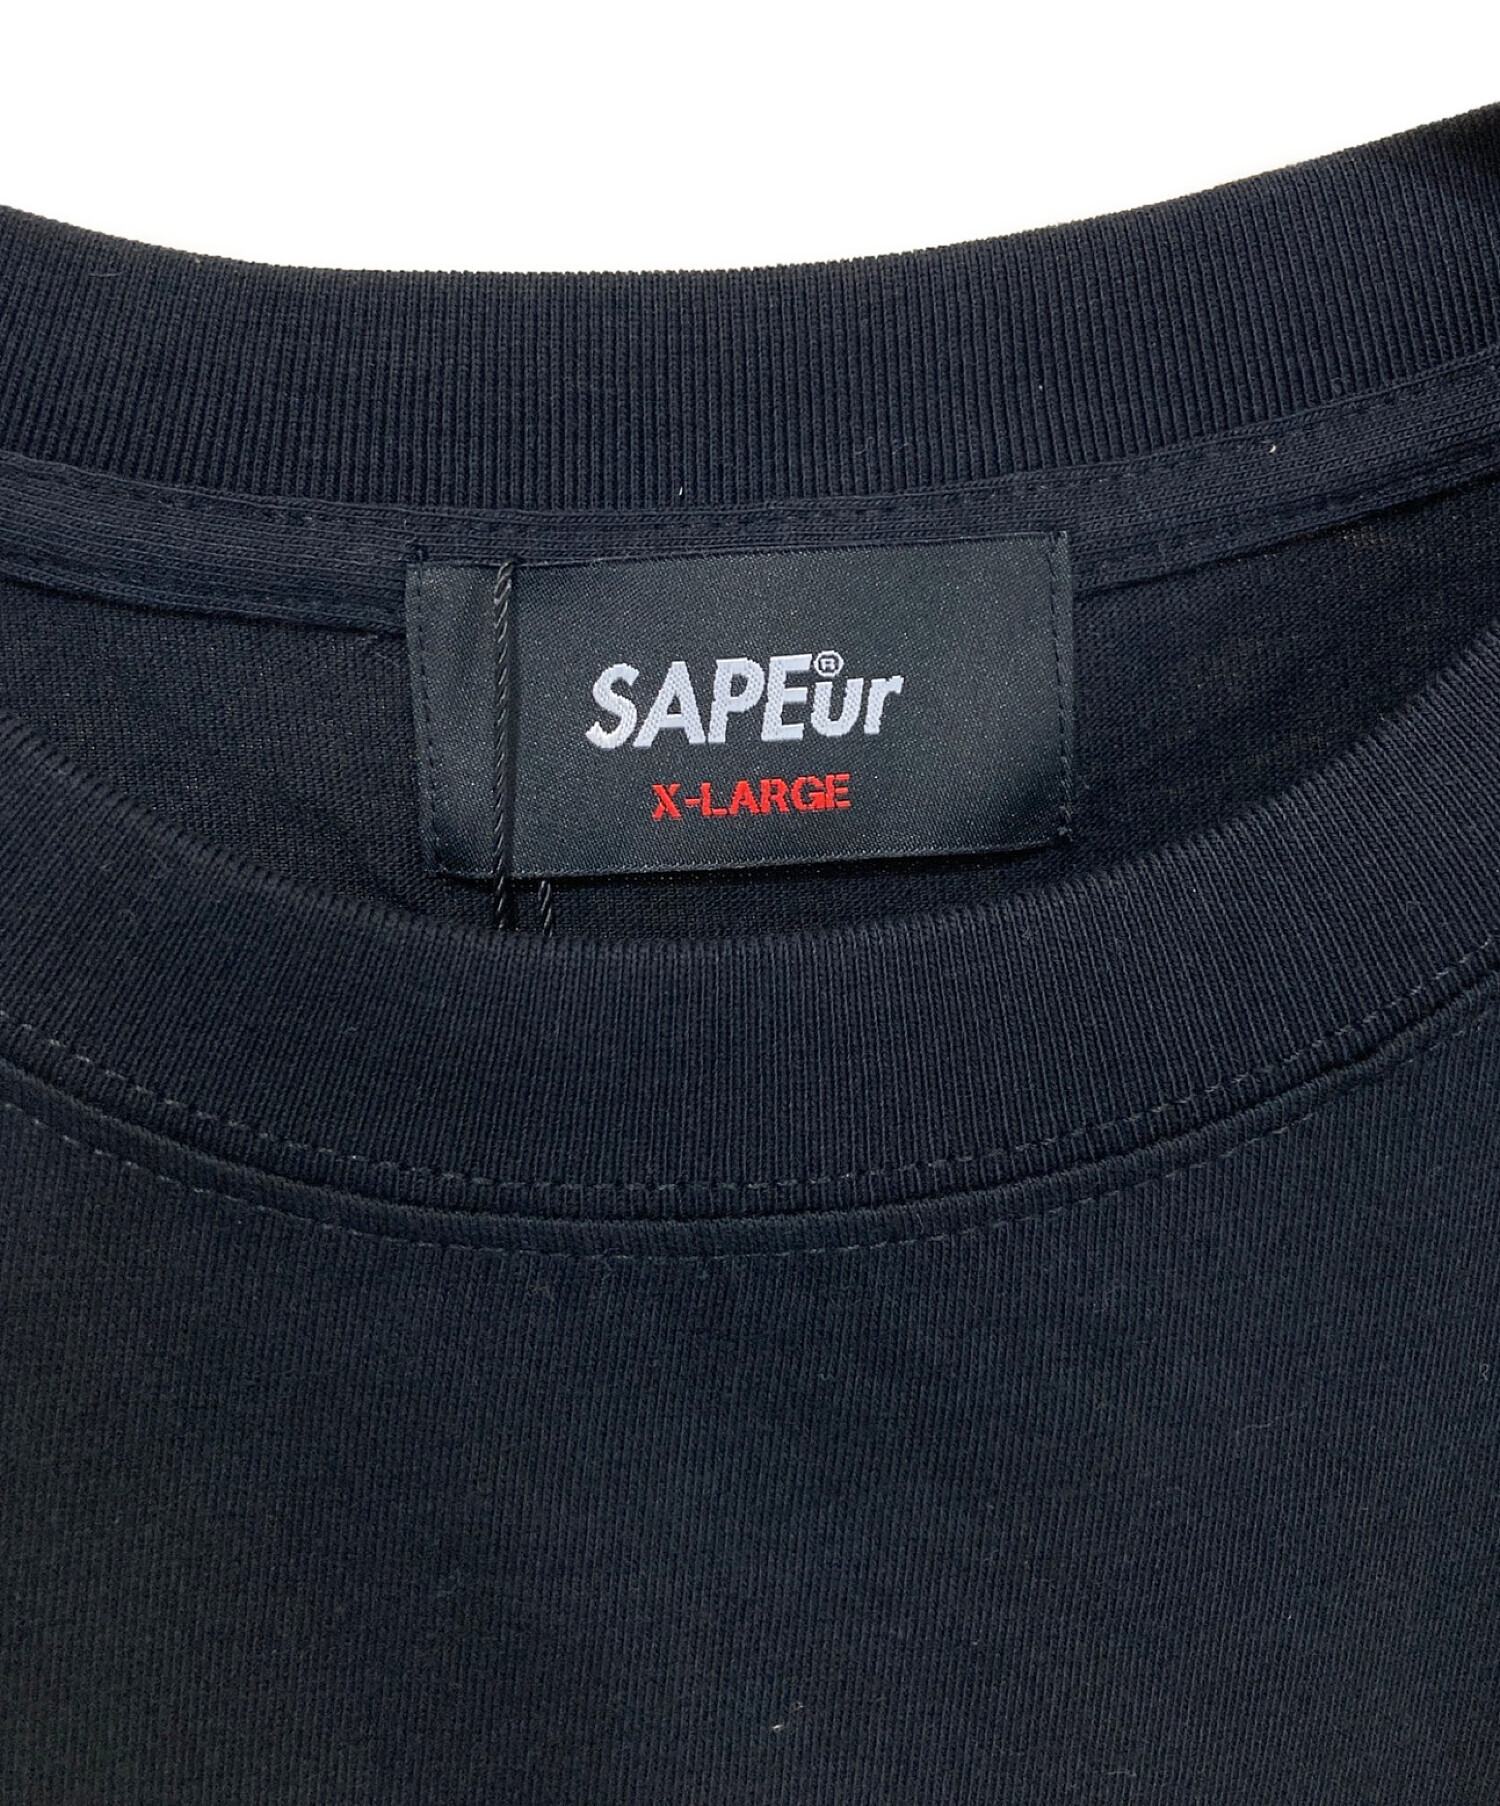 SAPEur (サプール) WANIDOG Tシャツ ブラック サイズ:XL 未使用品